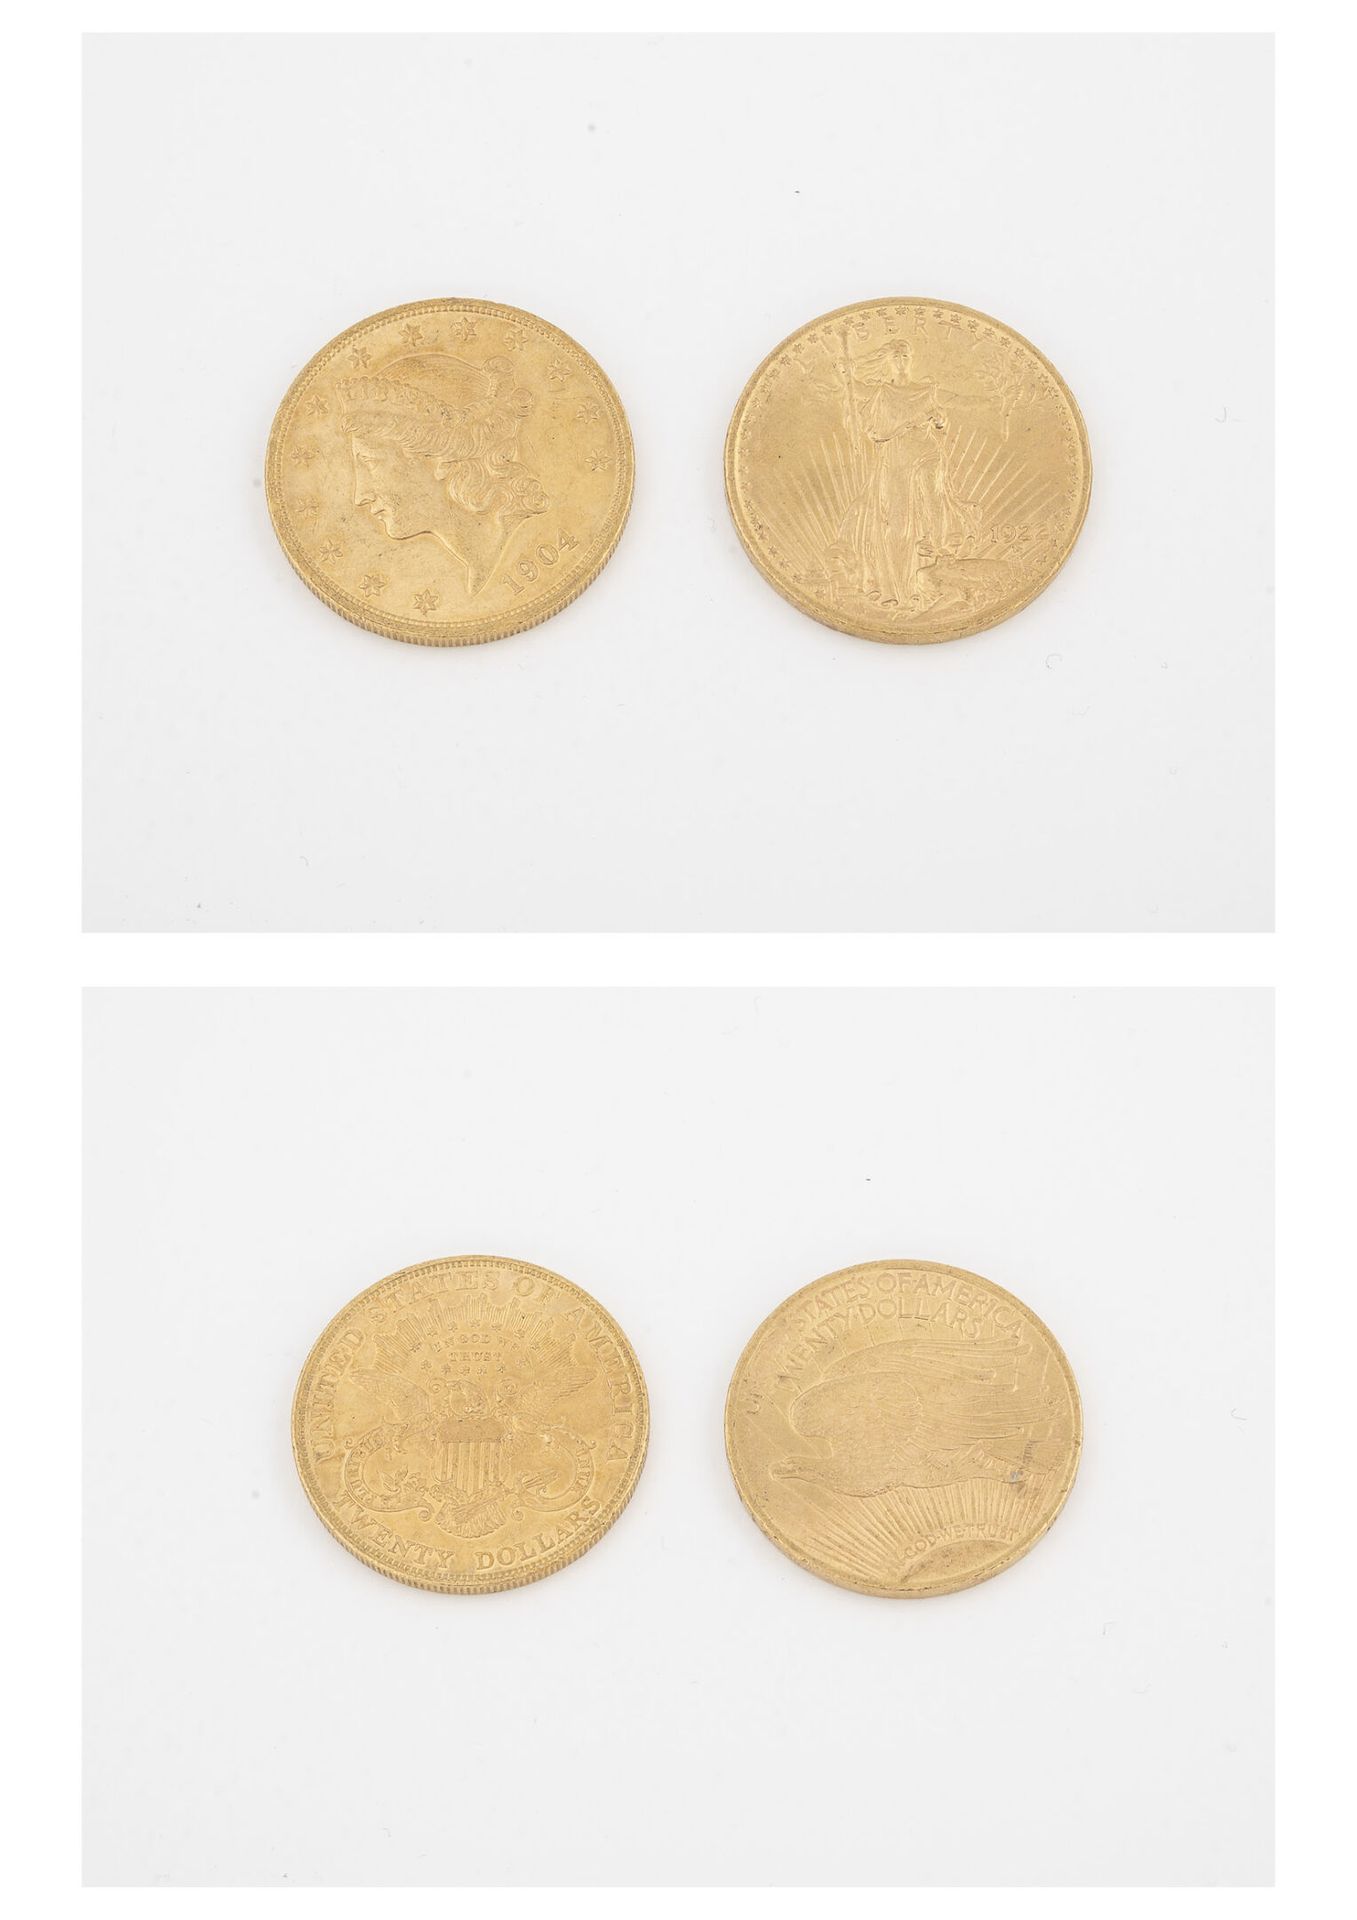 ÉTATS UNIS Due monete d'oro da 20 dollari, 1904 e 1922. 

Peso totale: 66,8 g. 
&hellip;